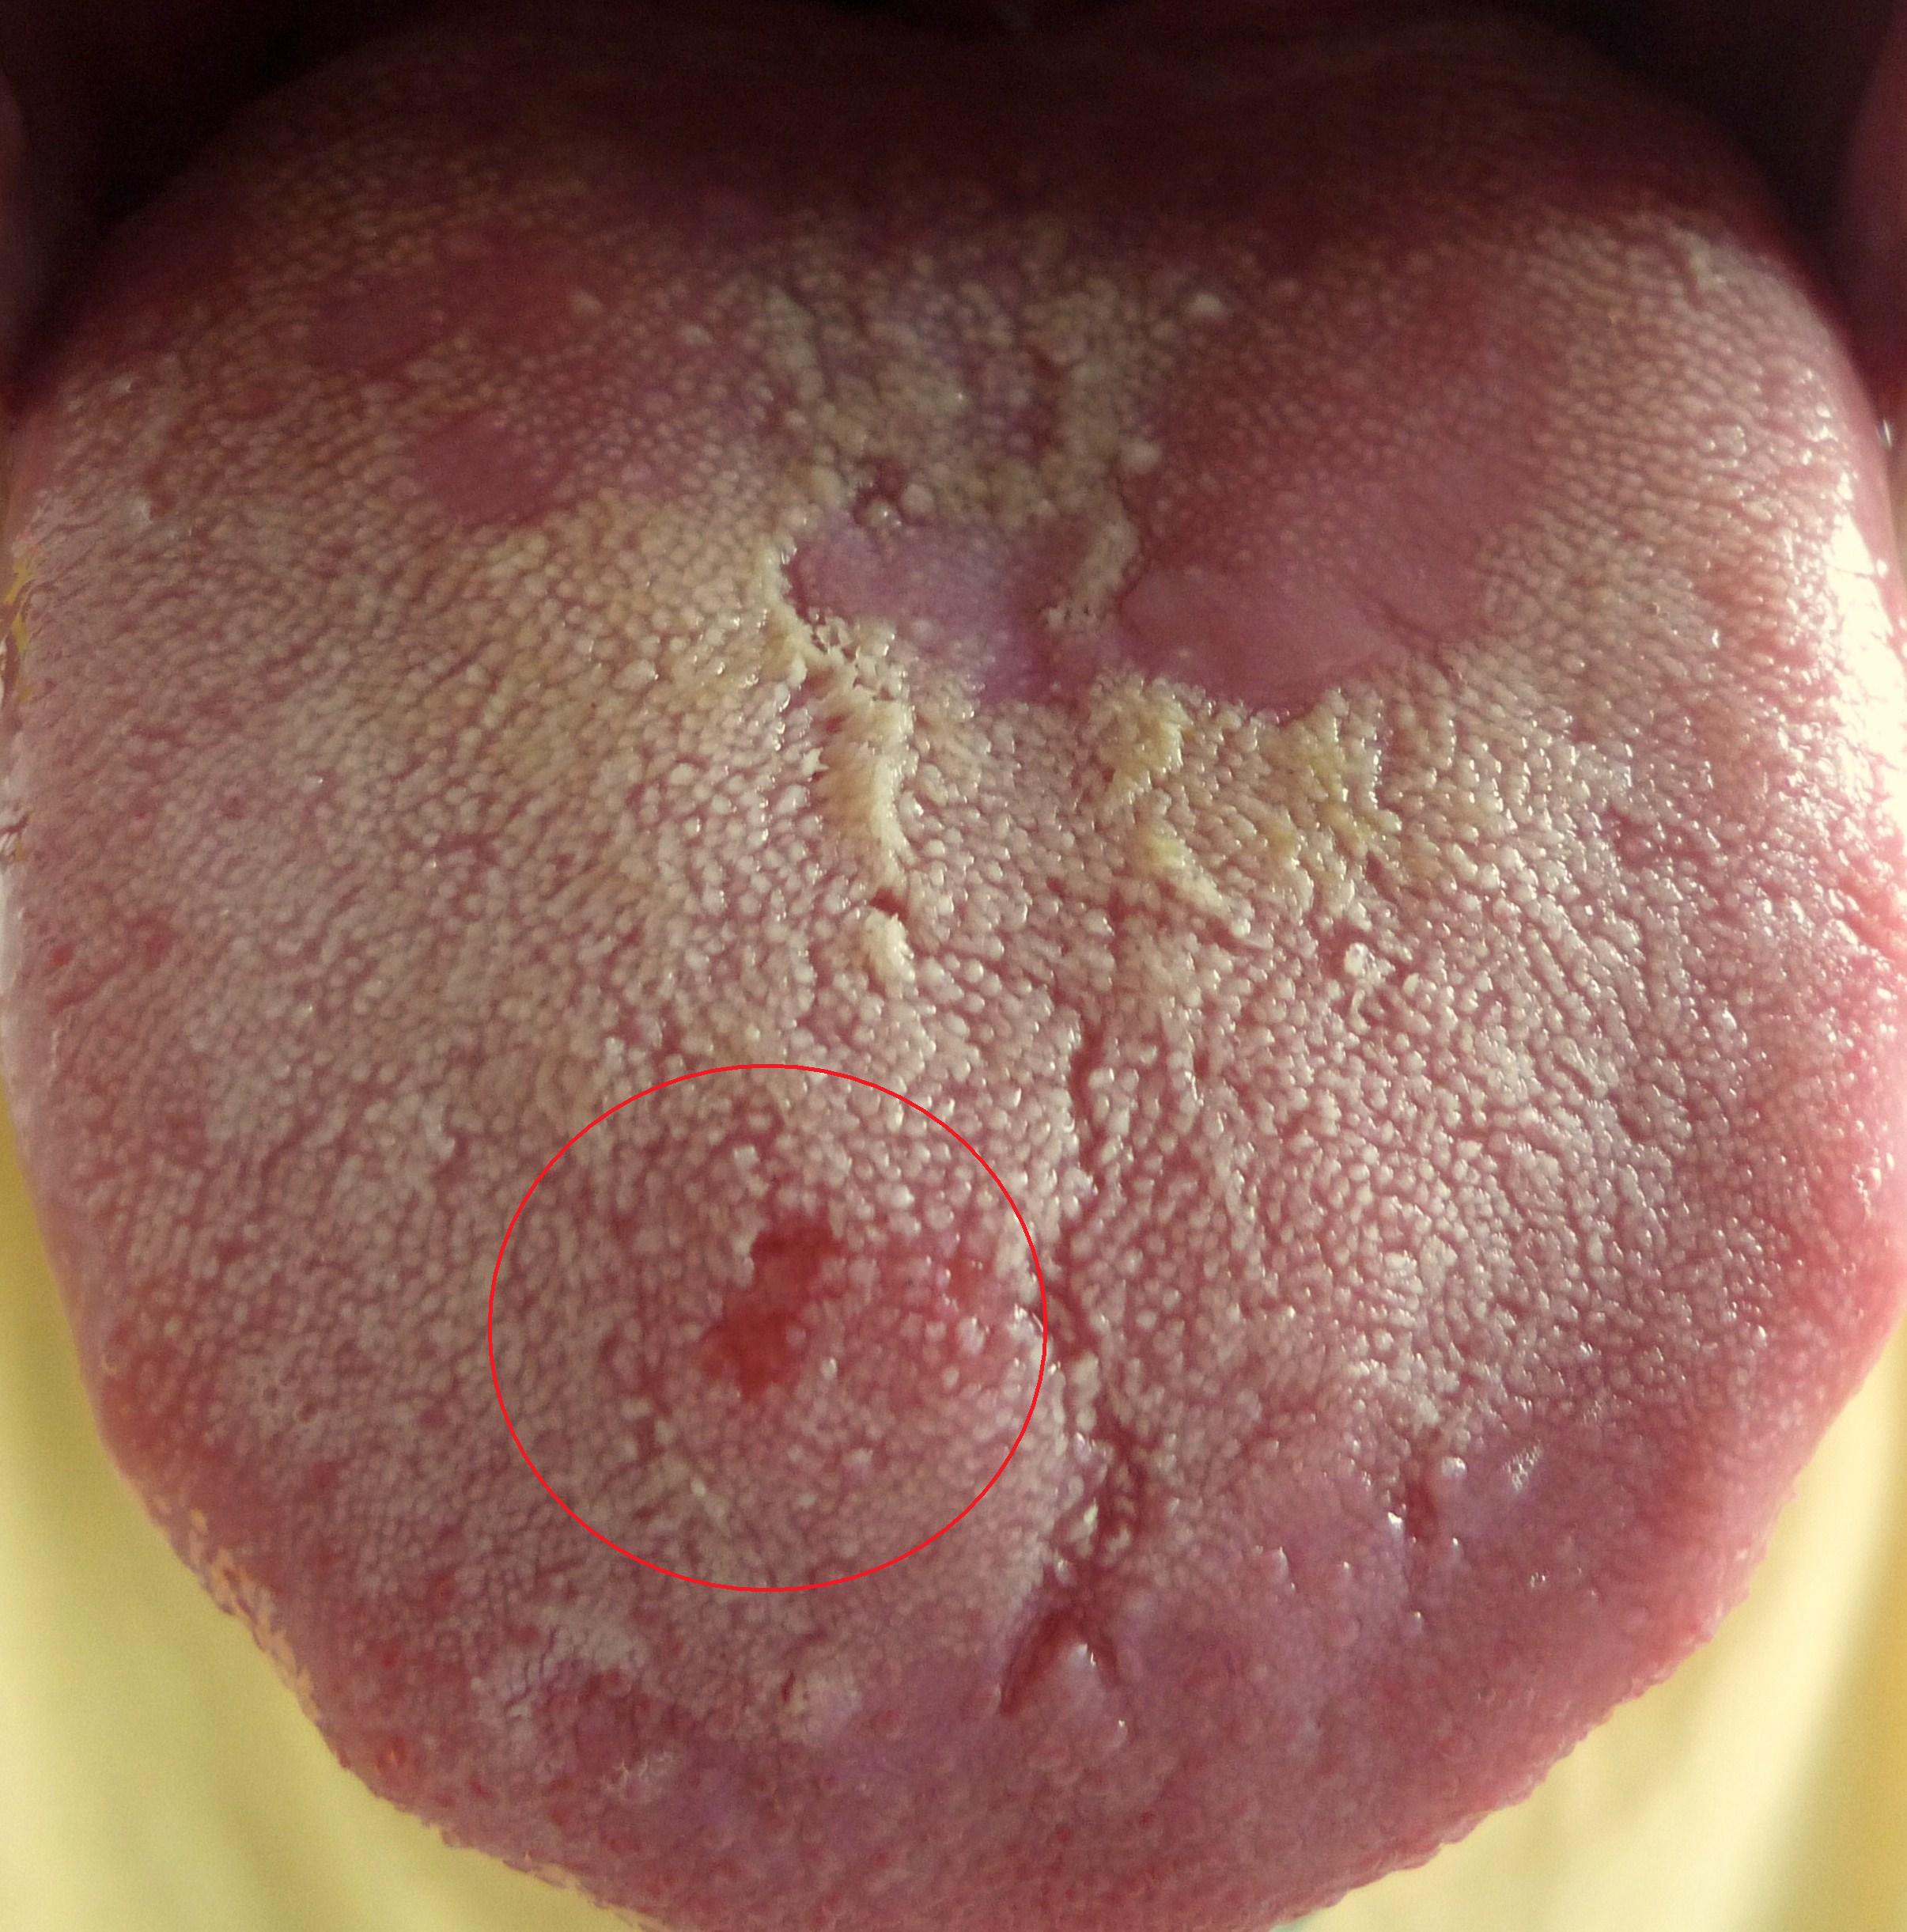 する ヒリヒリ 病気 が 舌 舌が痛い、ピリピリする…更年期以降に起きやすい「舌痛症」との付き合い方